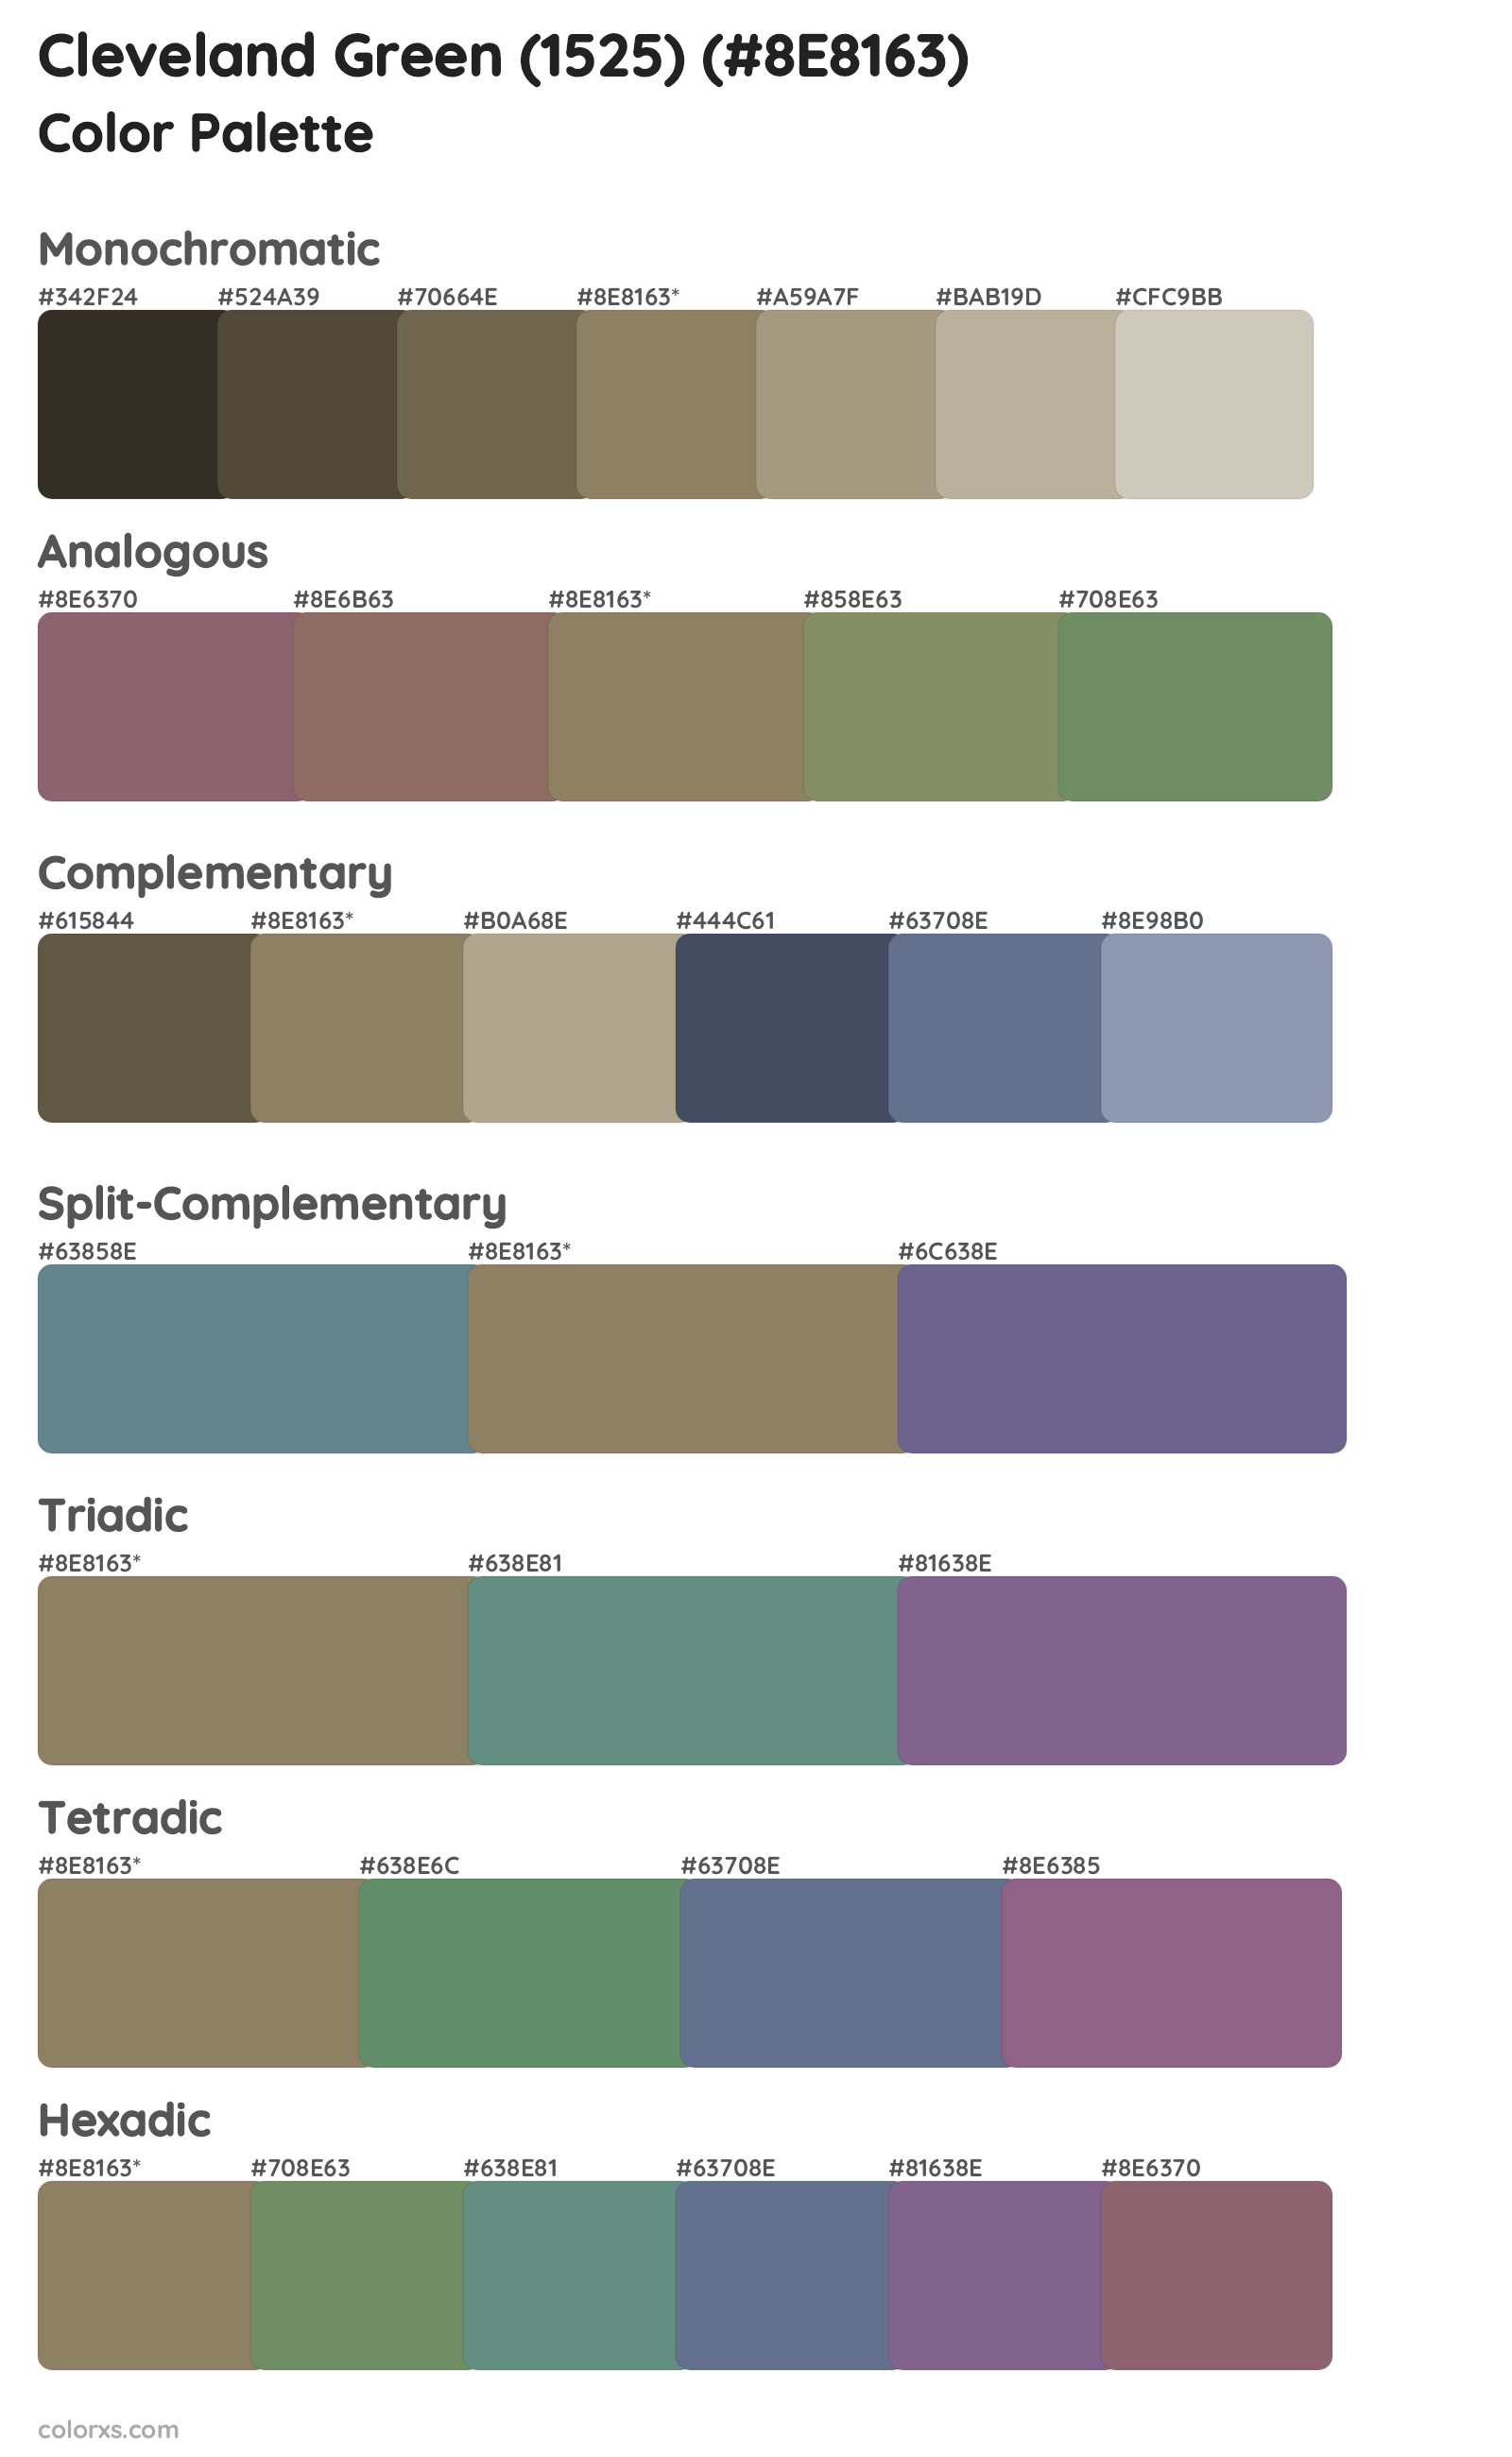 Cleveland Green (1525) Color Scheme Palettes